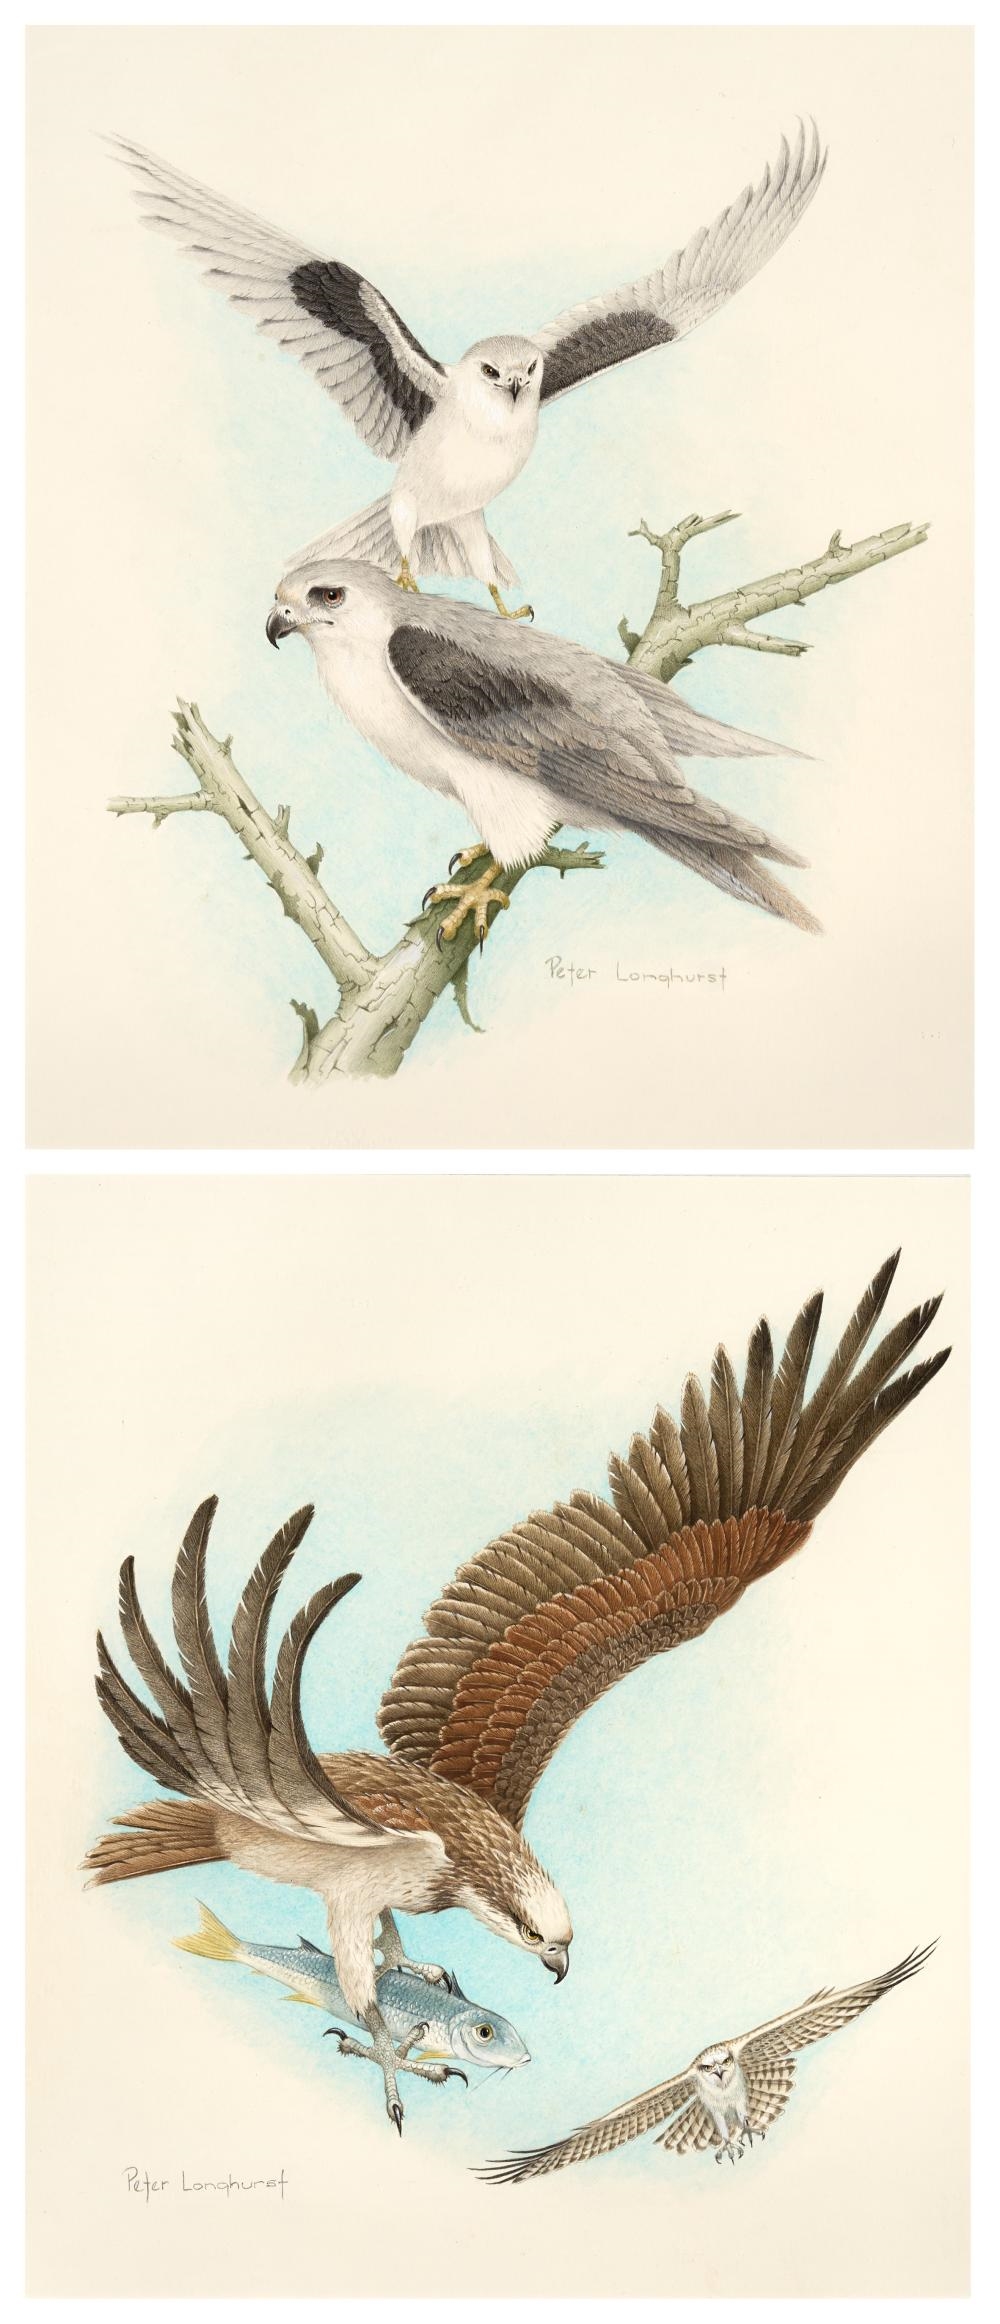 (2 works) - Letter Winged Kites and Australian Eastern Osprey - Peter Longhurst